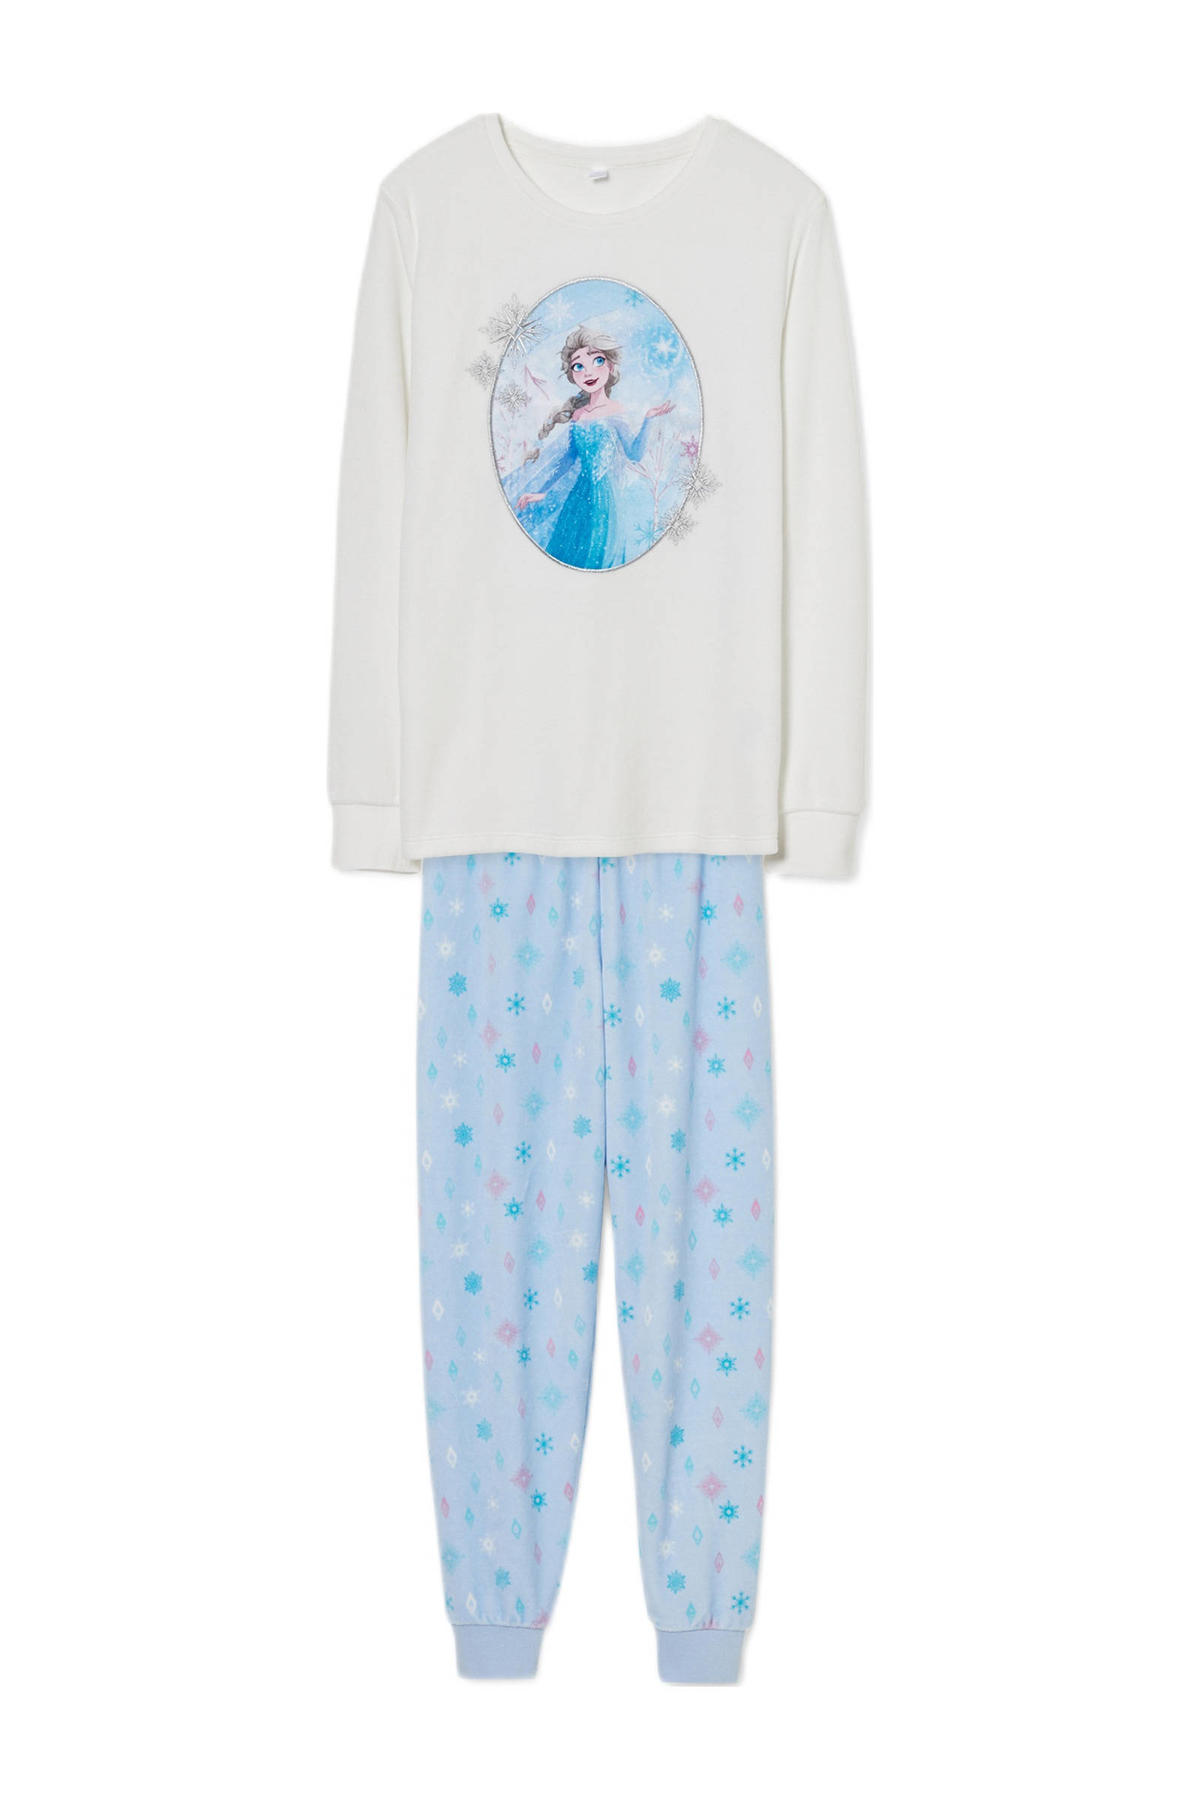 Integraal Afwijken vieren C&A Disney Frozen pyjama met printopdruk wit | wehkamp